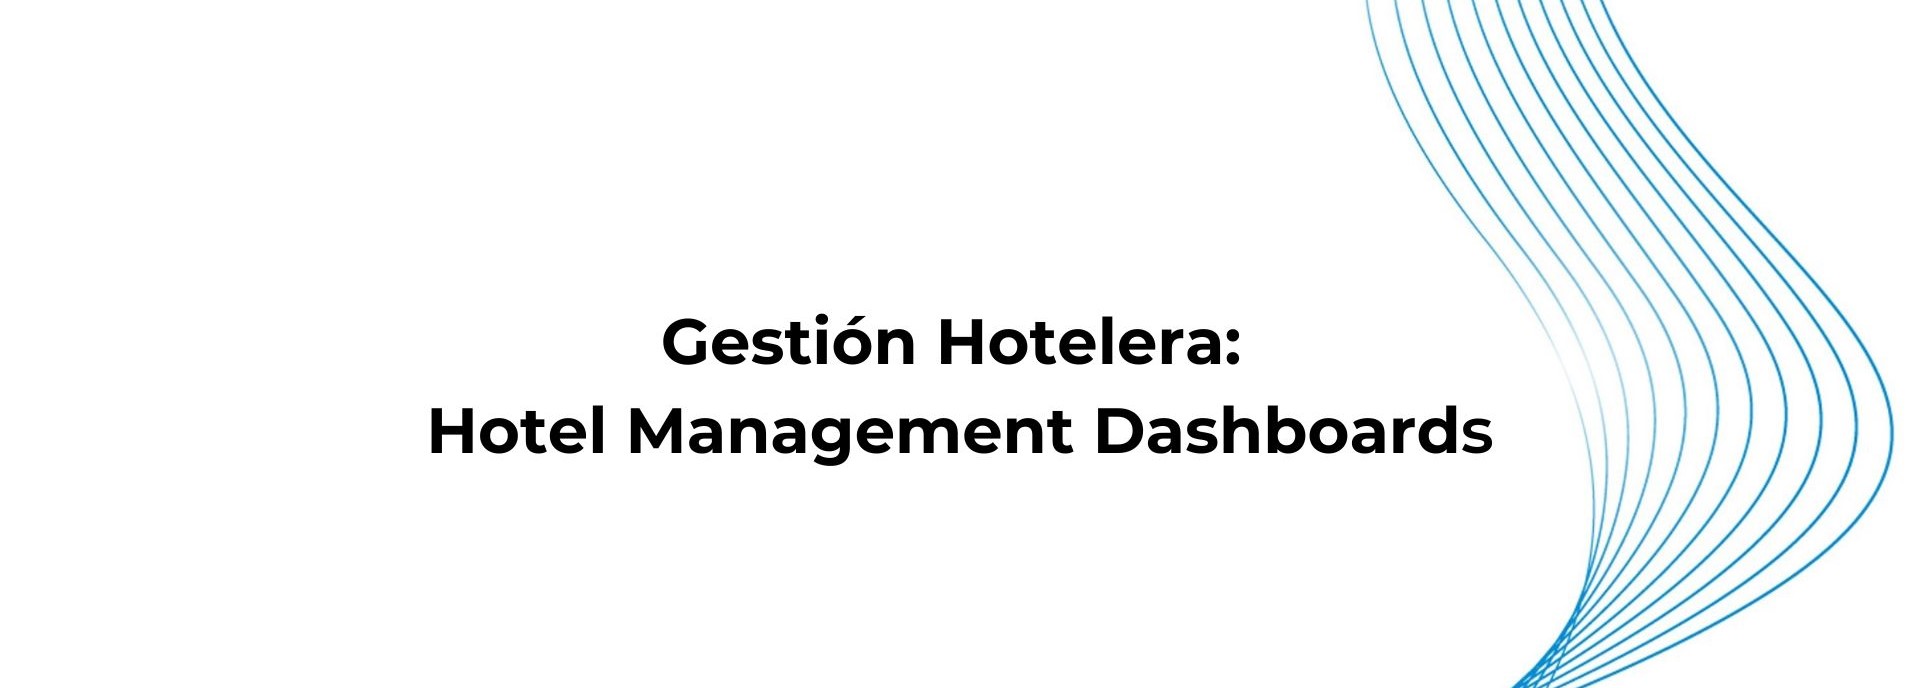 Gestión Hotelera Hotel Management Dashboards